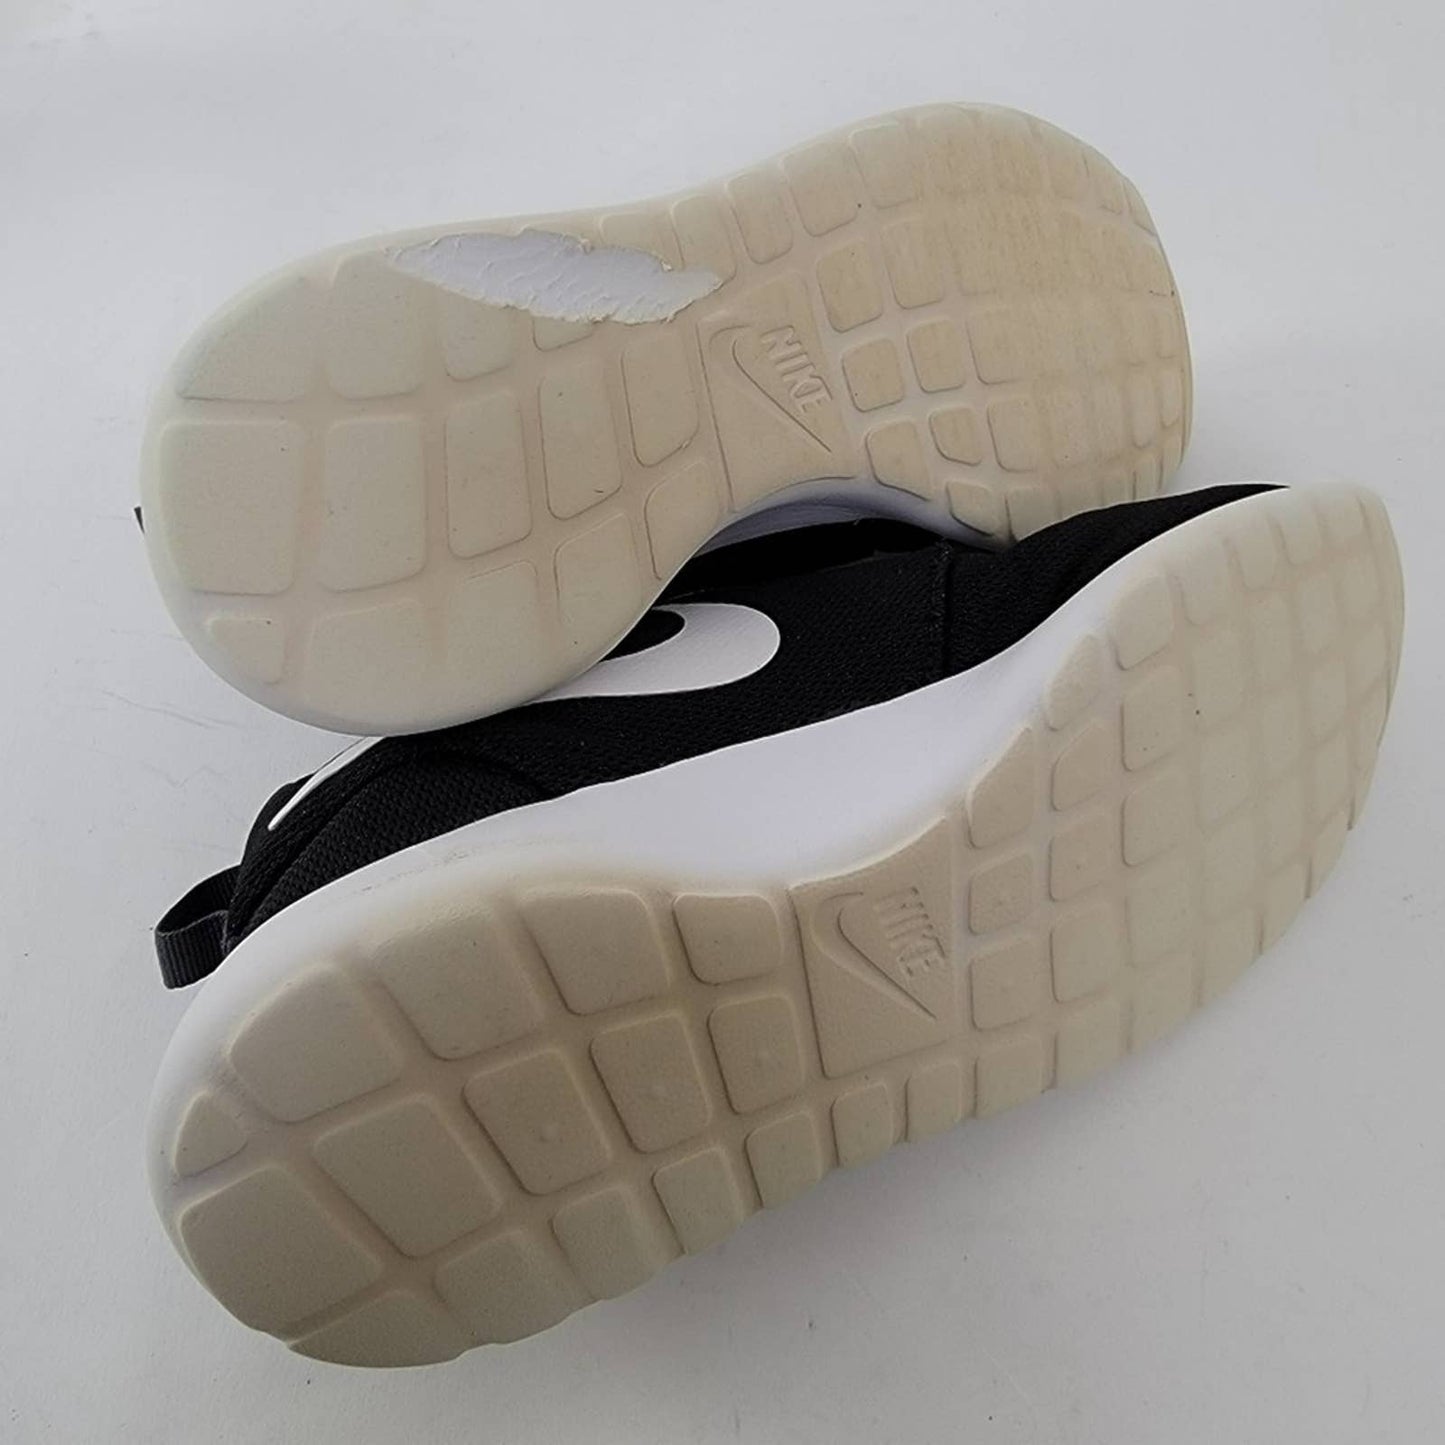 Nike Roshe One Black Running Shoes - 9.5